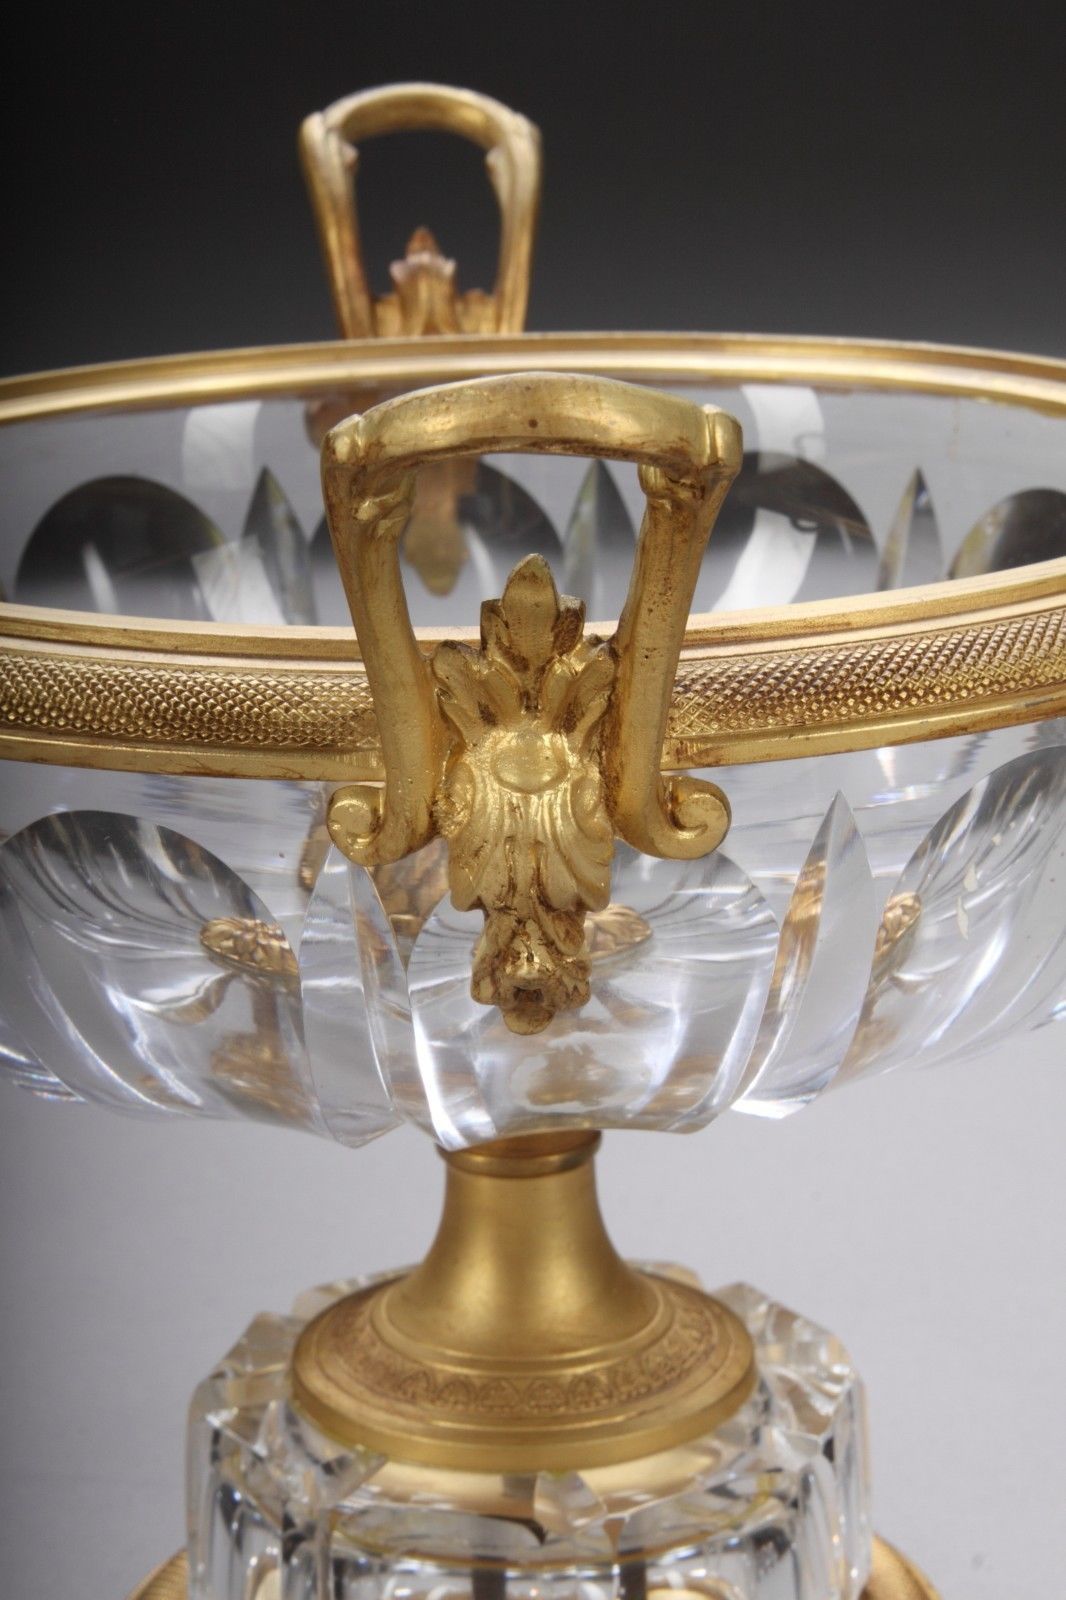 Une paire de compotes en bronze doré et cristal taillé du début du 20e siècle. 

France, datant d'environ 1900. 

Dimensions : Hauteur 9